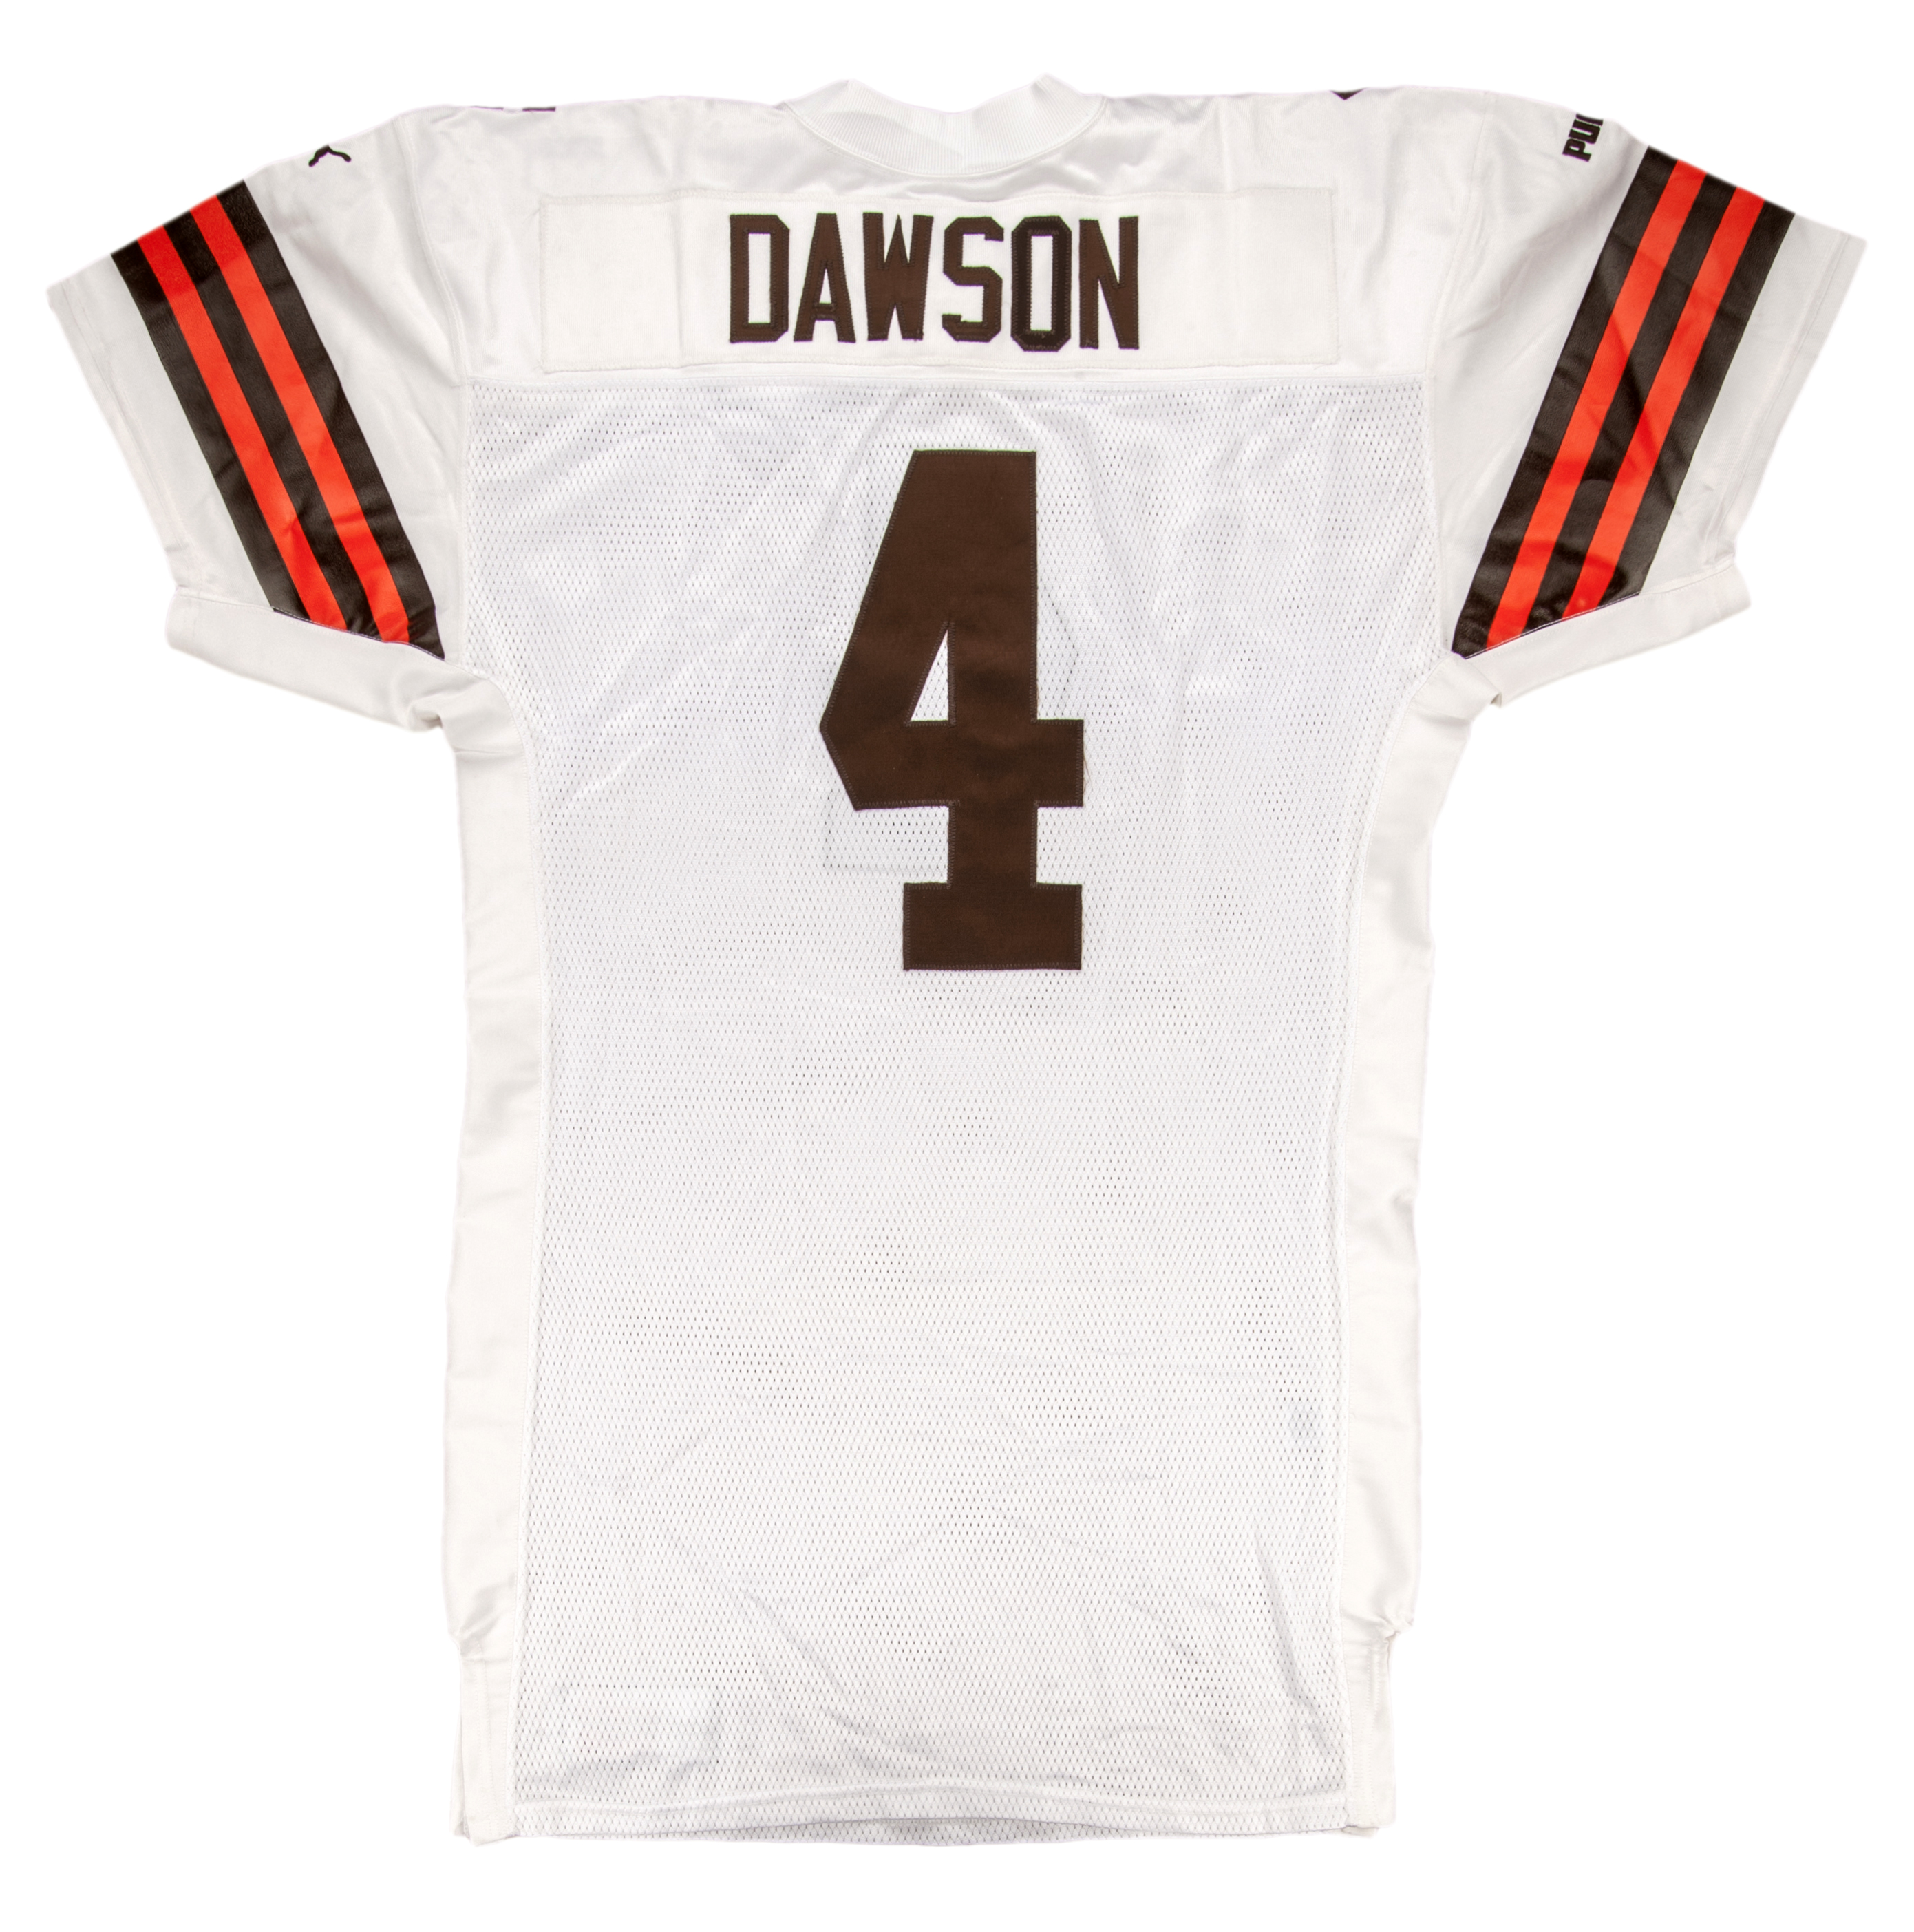 phil dawson browns jersey